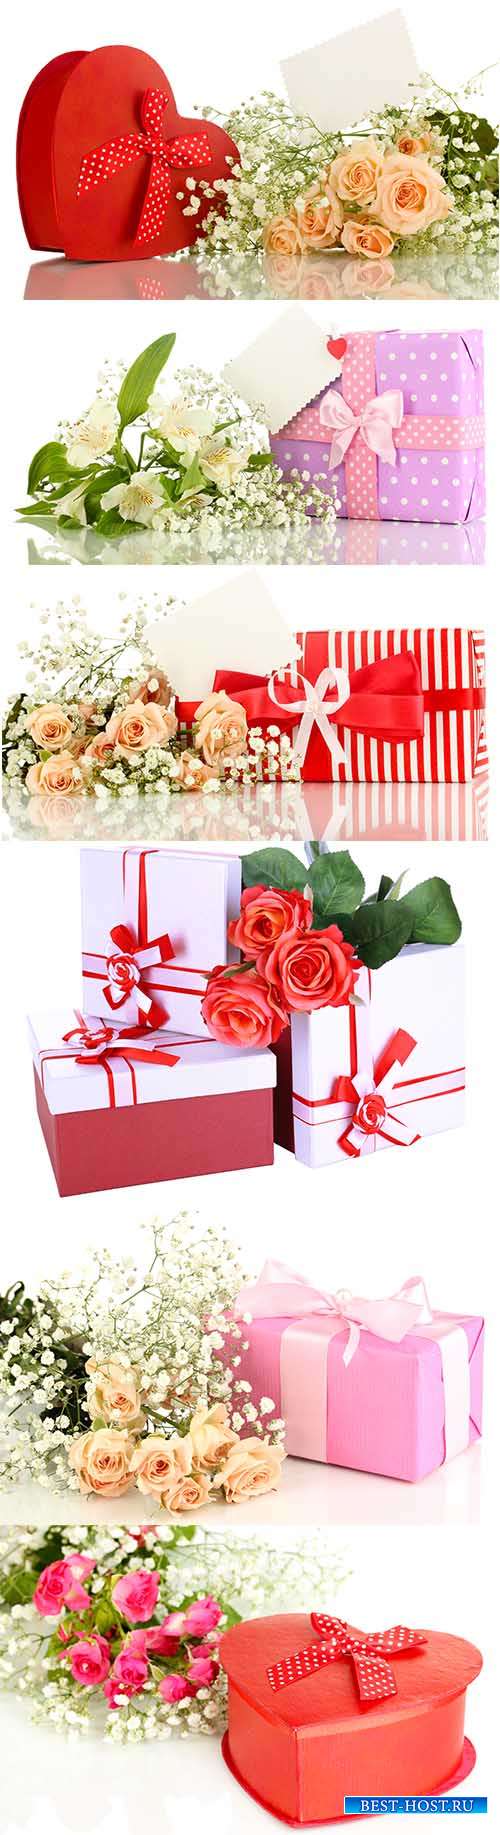 Фоны с цветами и подарками для поздравлений - Растровый клипарт